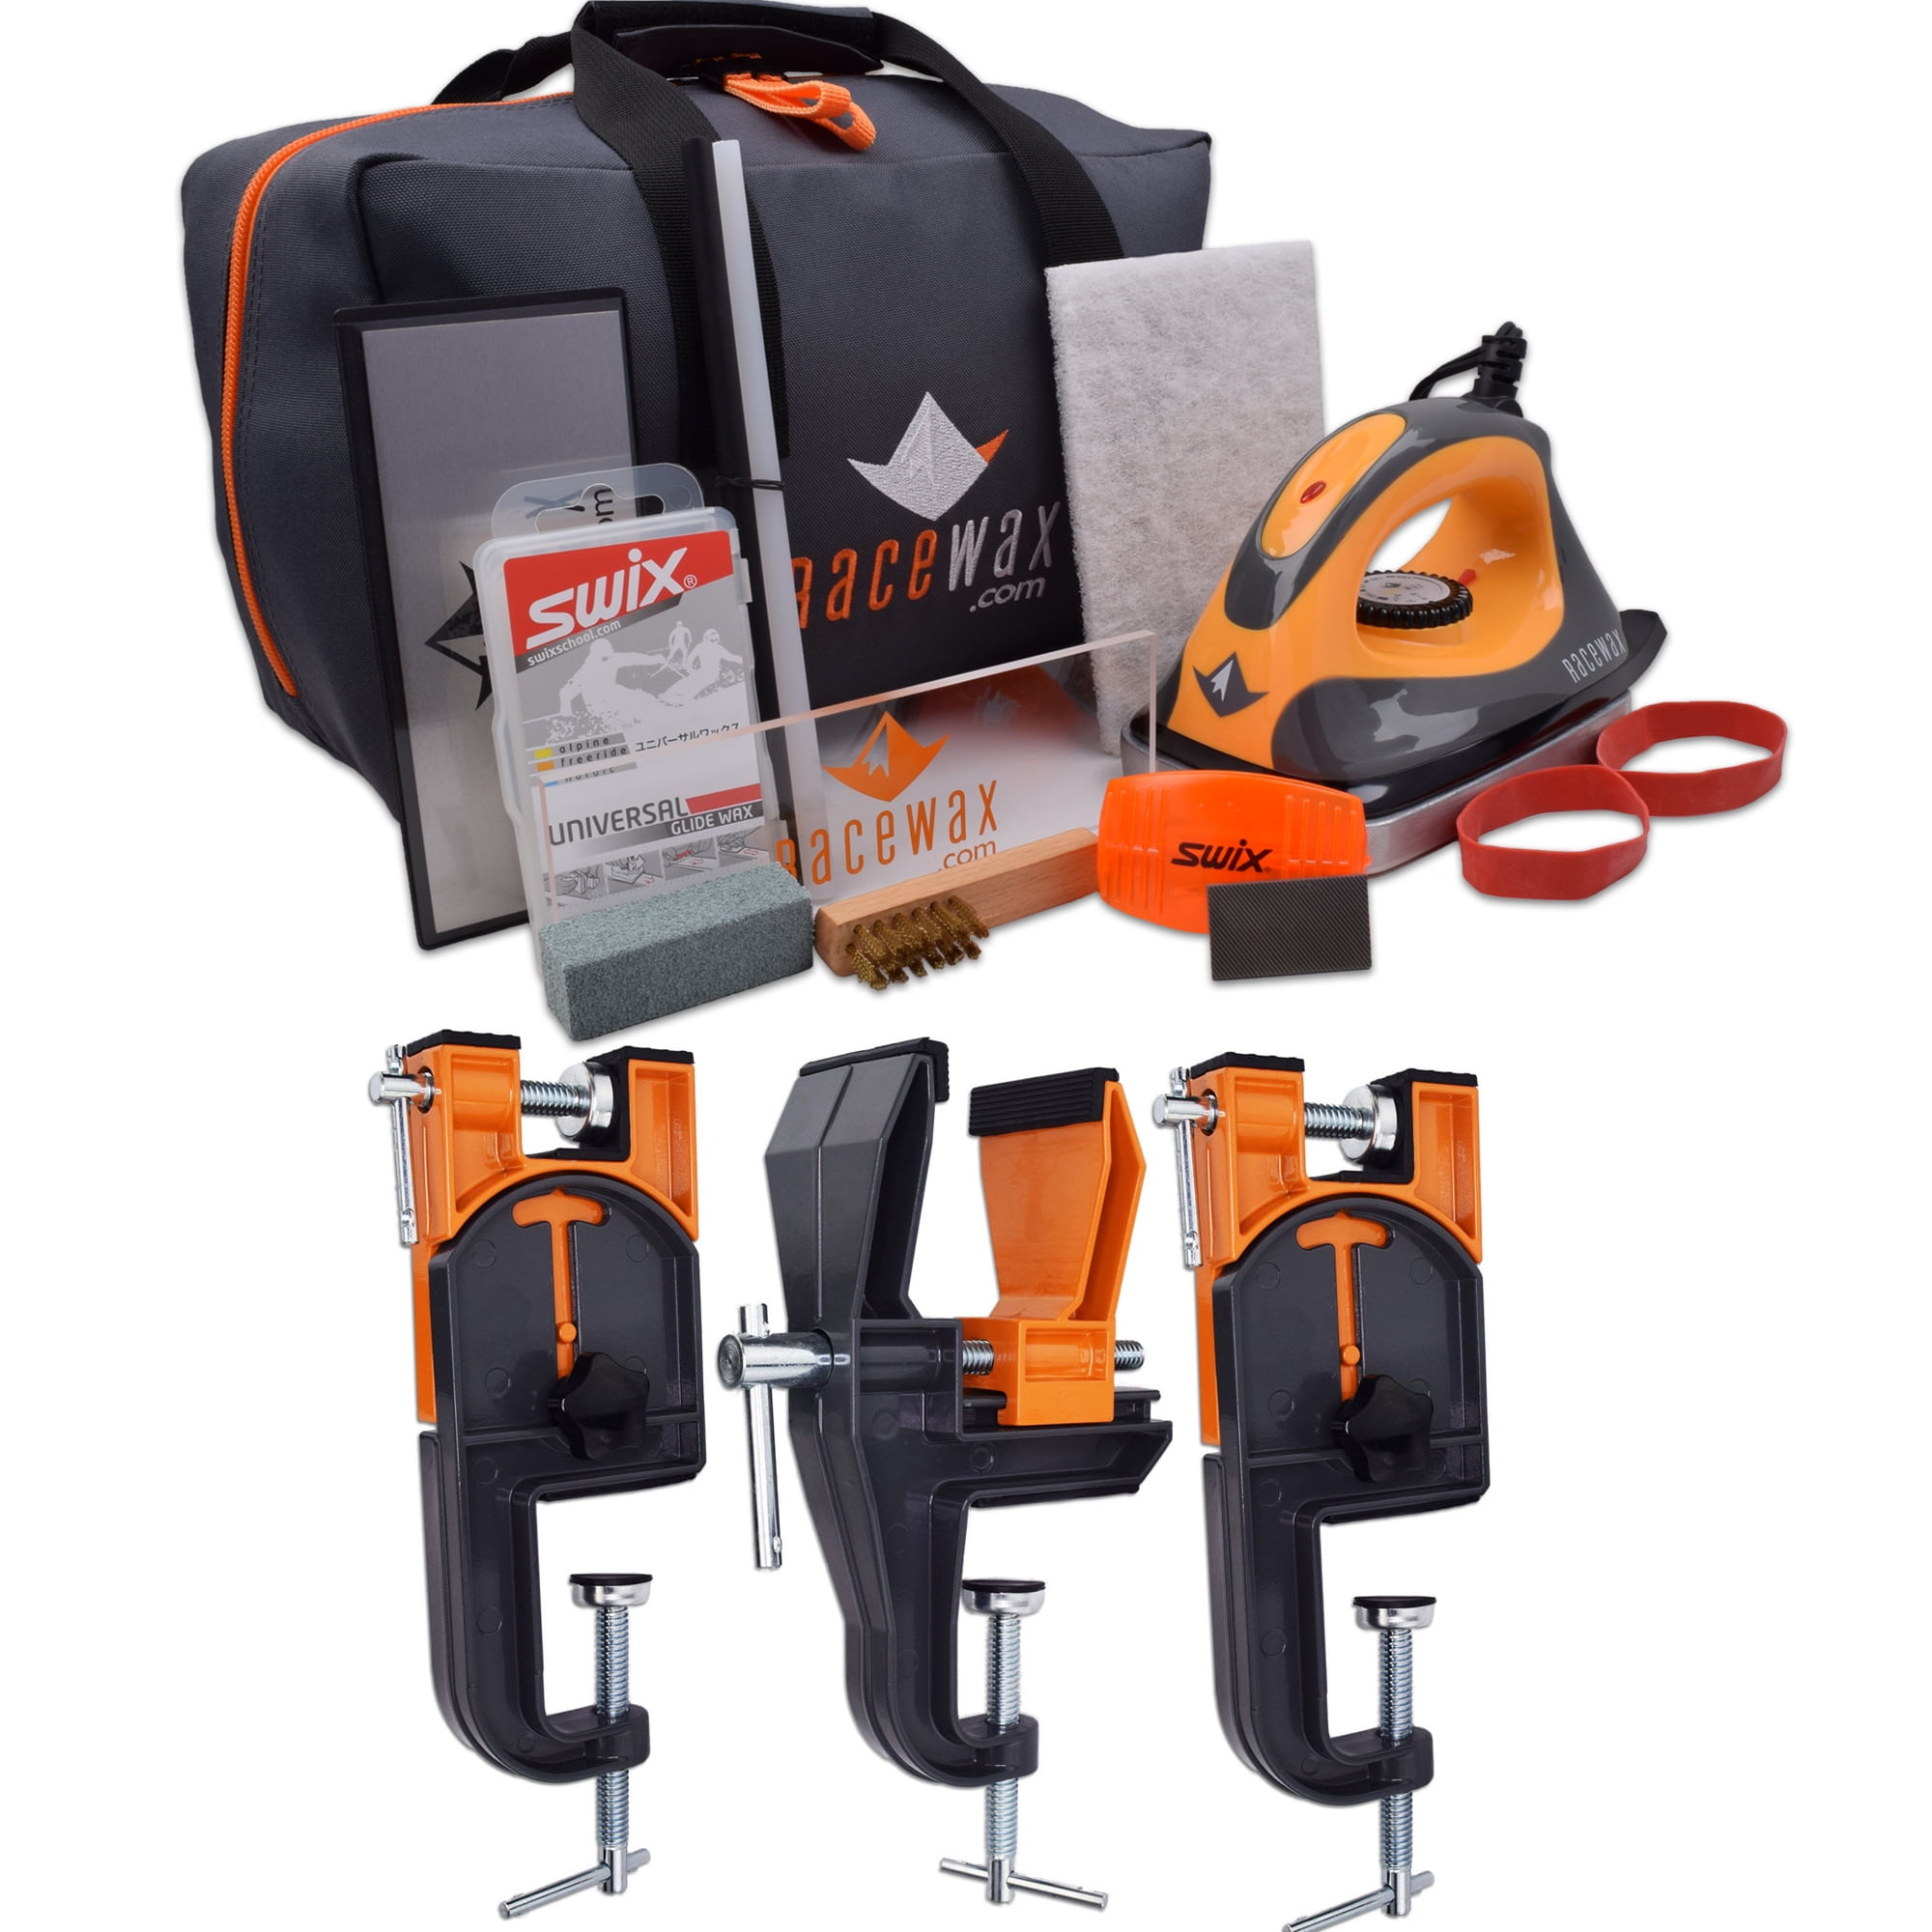 Accepts Snowboard Adapter RaceWax Uni Ski Wax Tuning Kit Plus Ski Vise